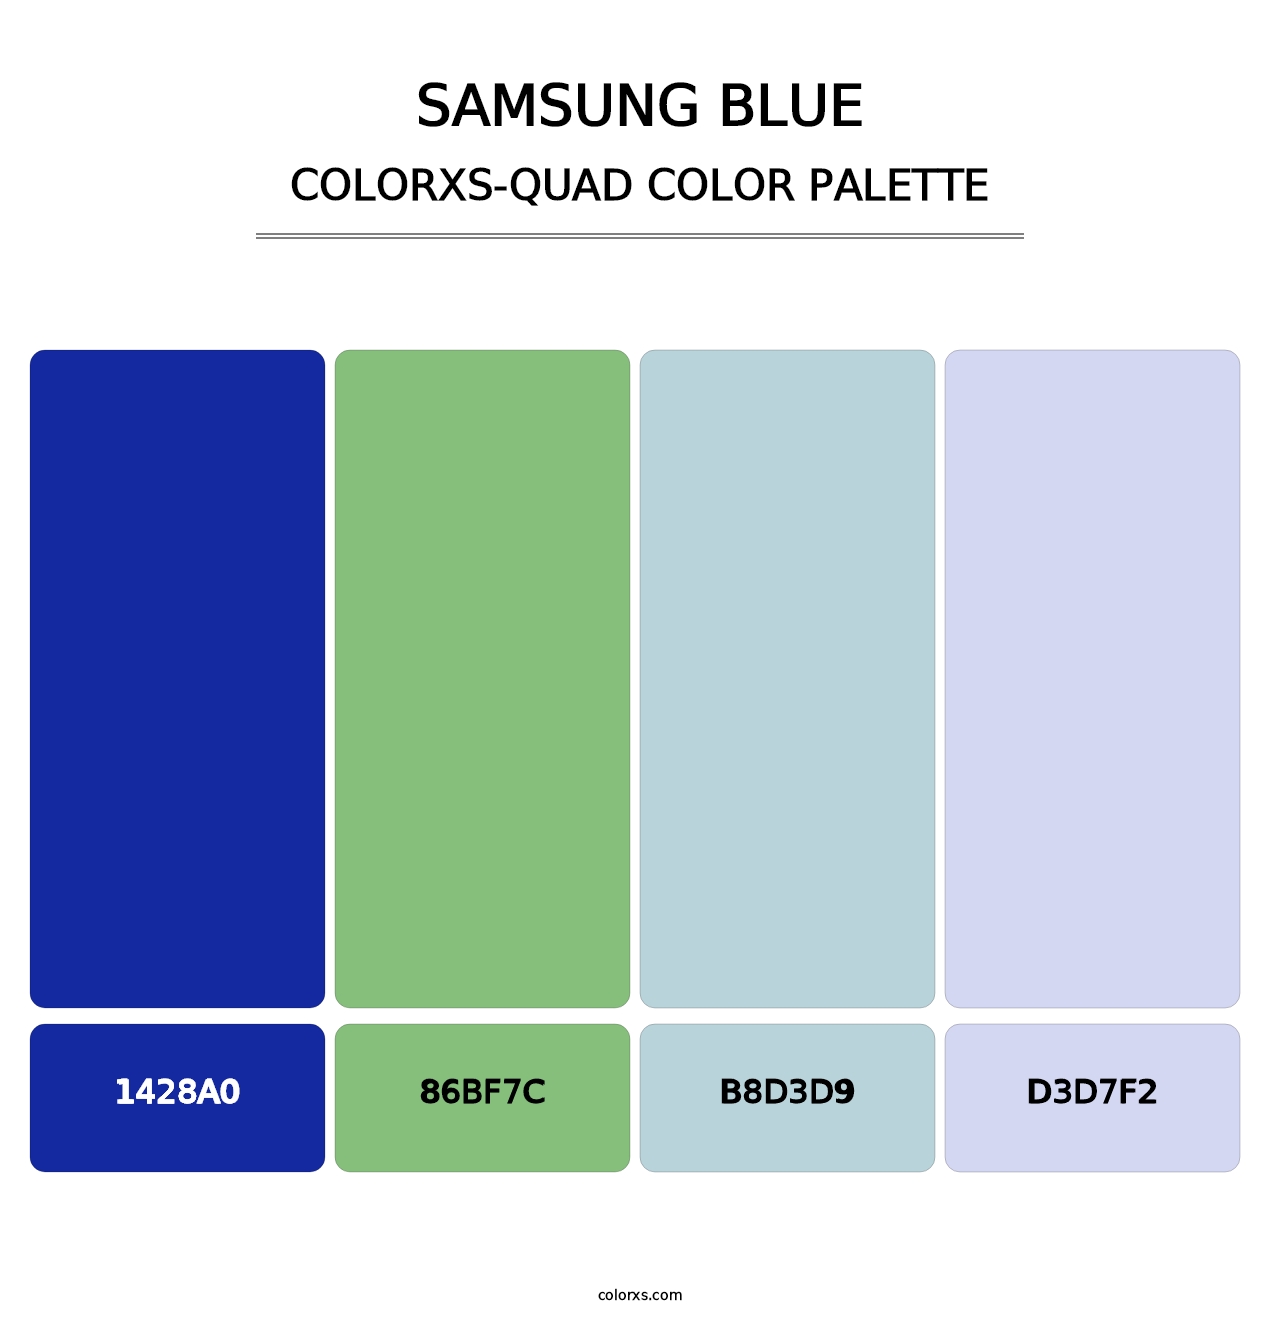 Samsung Blue - Colorxs Quad Palette